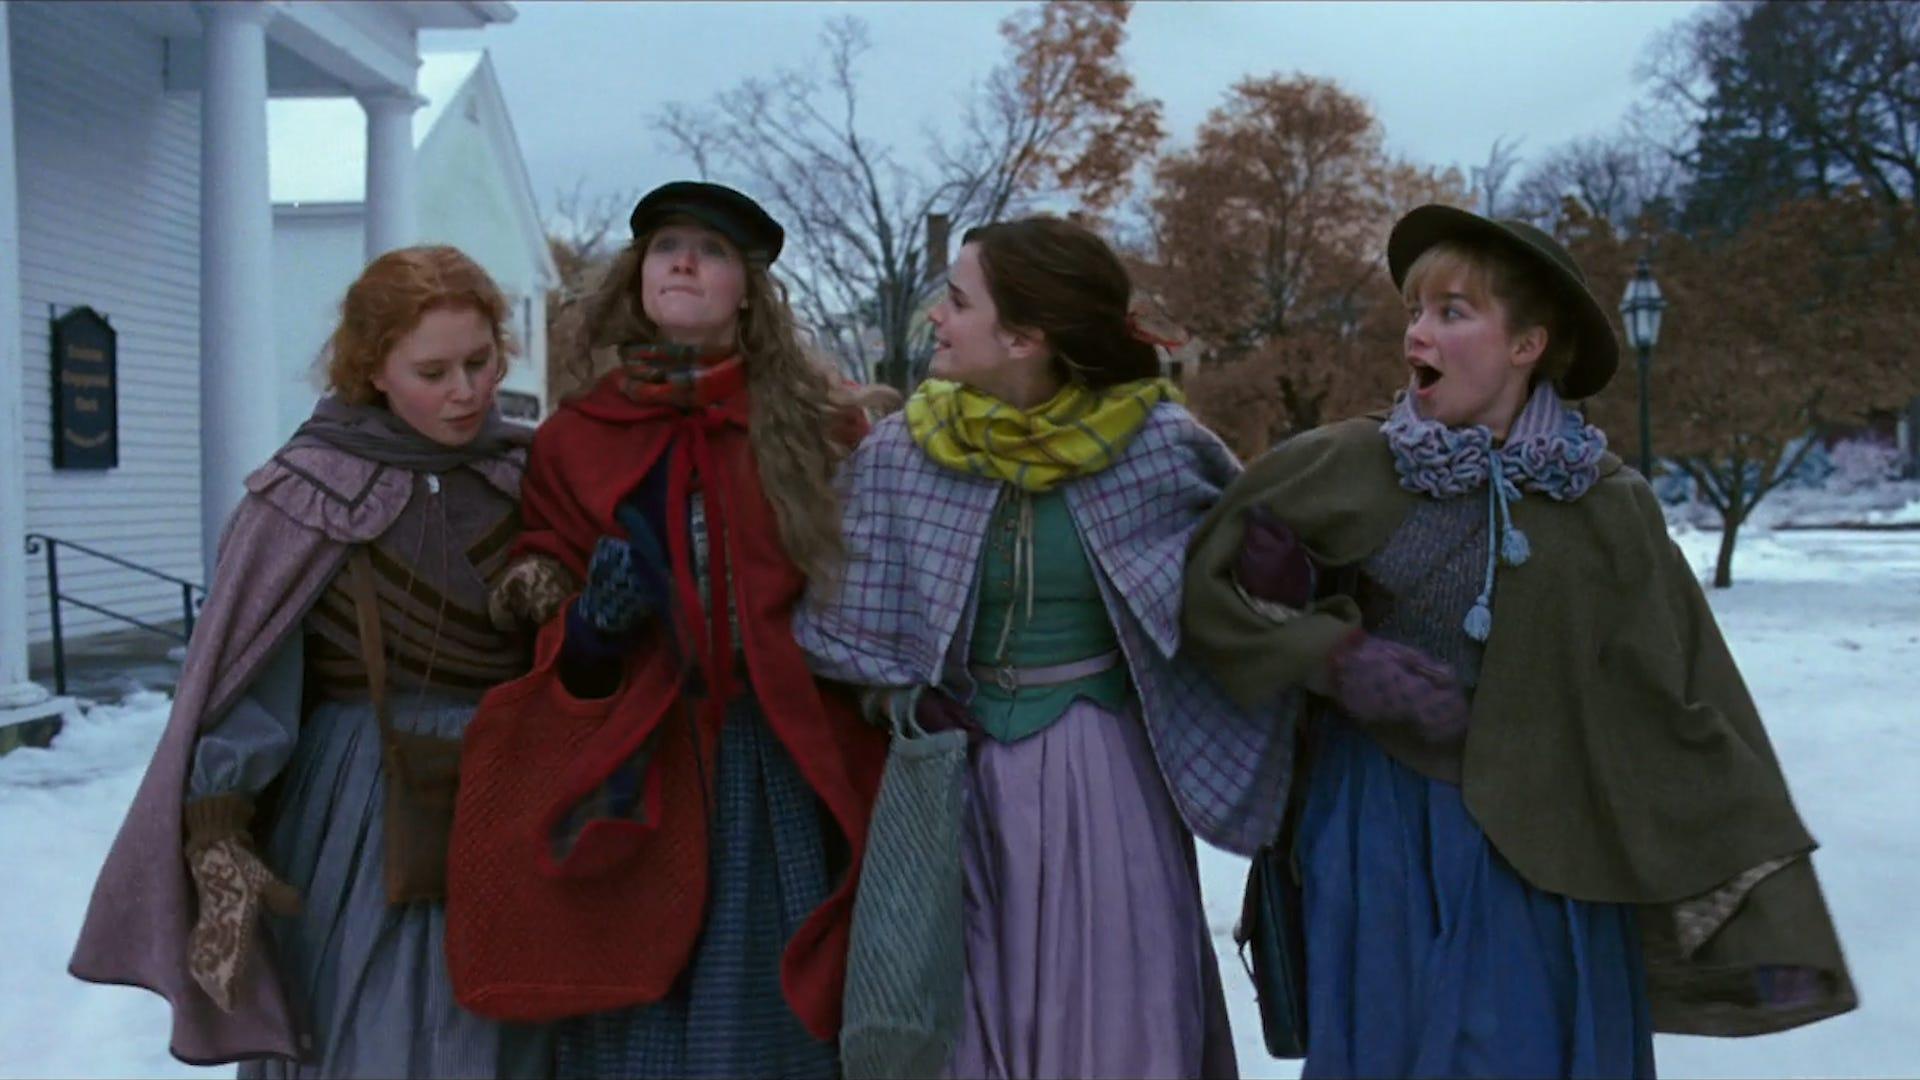 Uncut Gems, ' 'Little Women' lead Christmas Day movie openings